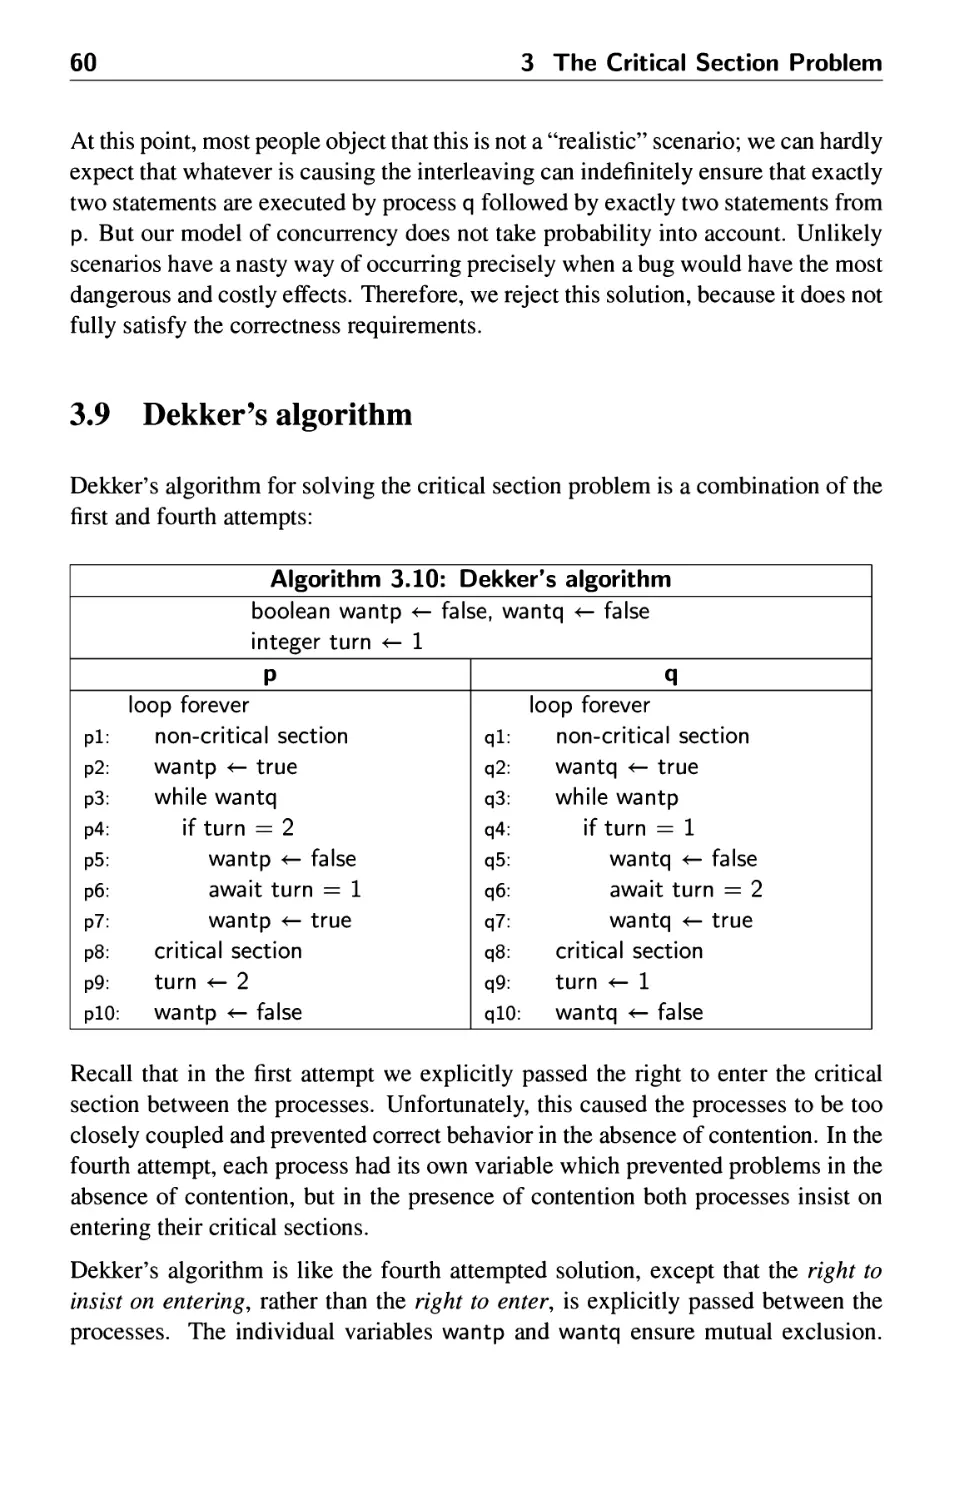 3.9 Dekker's algorithm